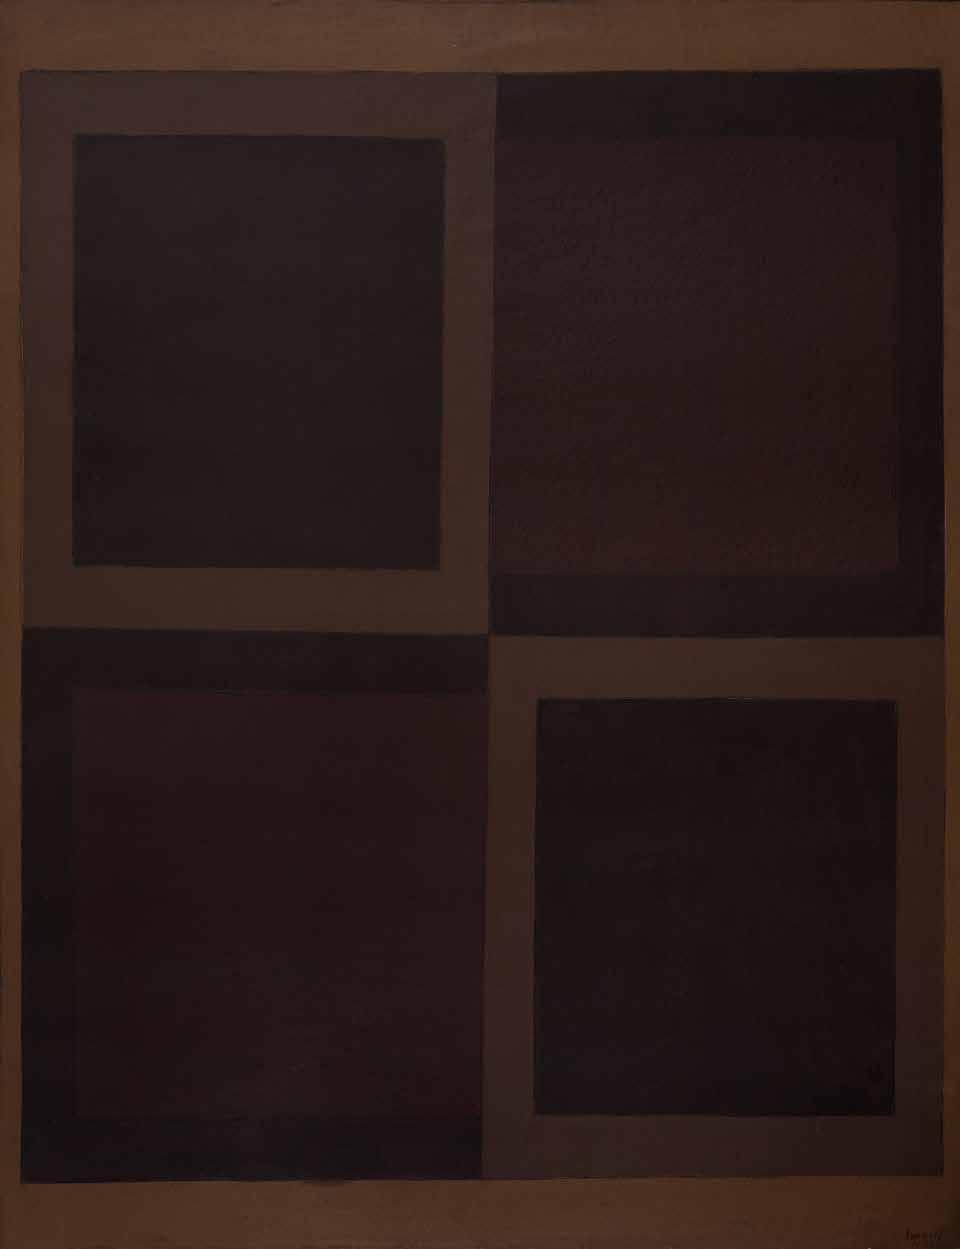 78 ARCANGELO IANELLI Superposição de Quadrados 130 x 100 cm 1972